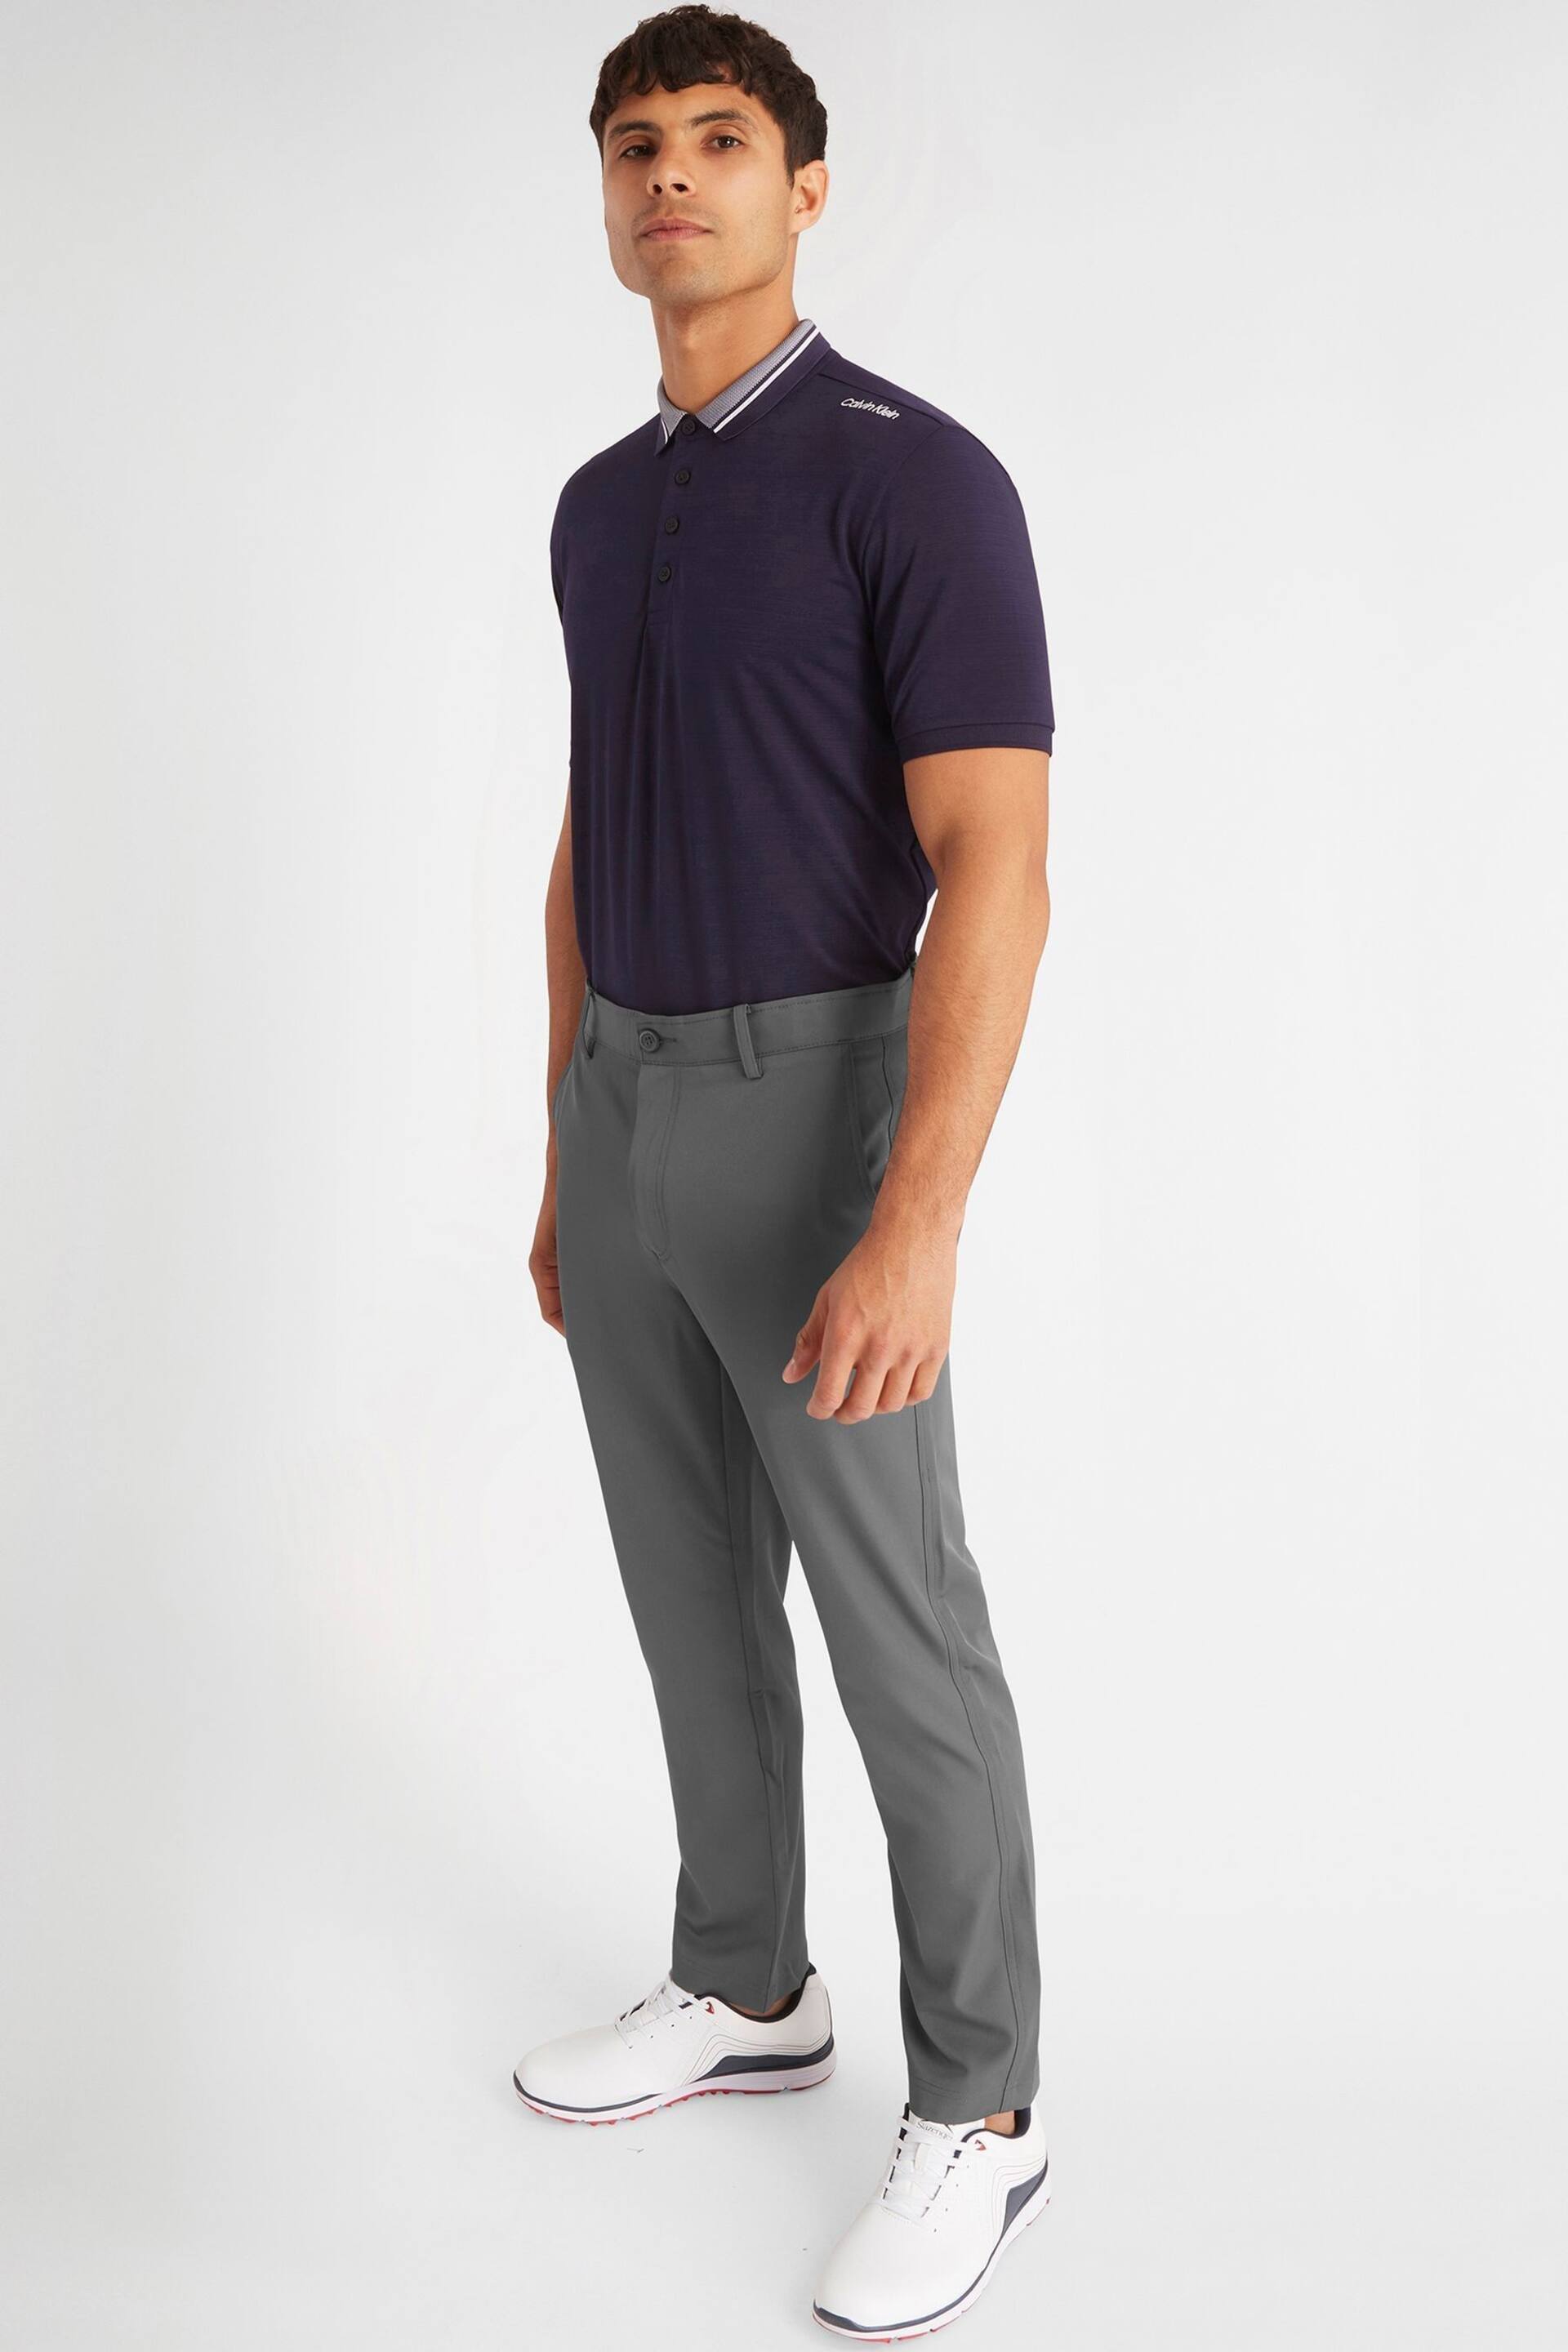 Calvin Klein Golf Navy Parramore Polo Shirt - Image 2 of 7